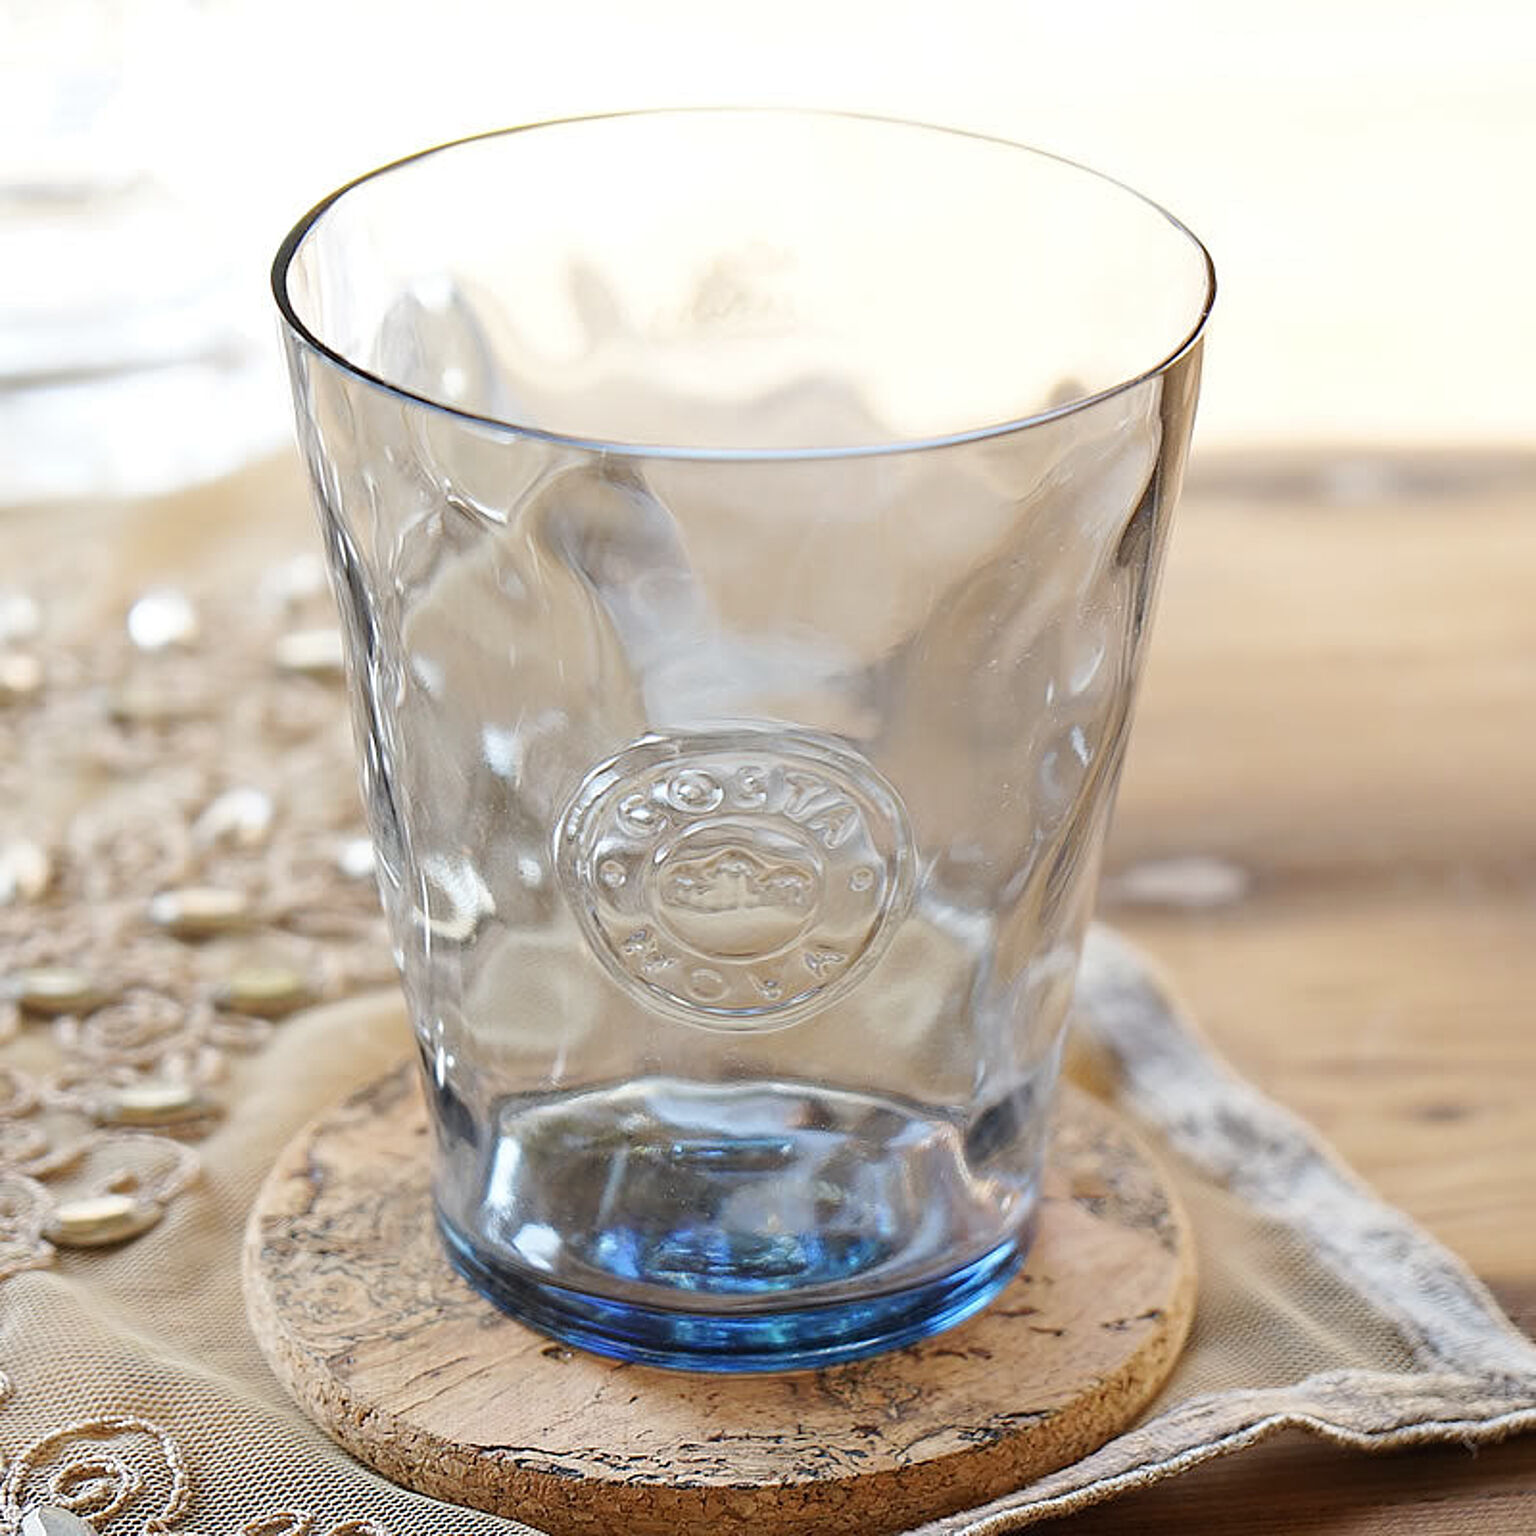 Costa Nova コスタノバ タンブラー グレー色 ポルトガル製 ガラス製 グラス おしゃれ テーブルウェア 食器 通販 Roomclipショッピング